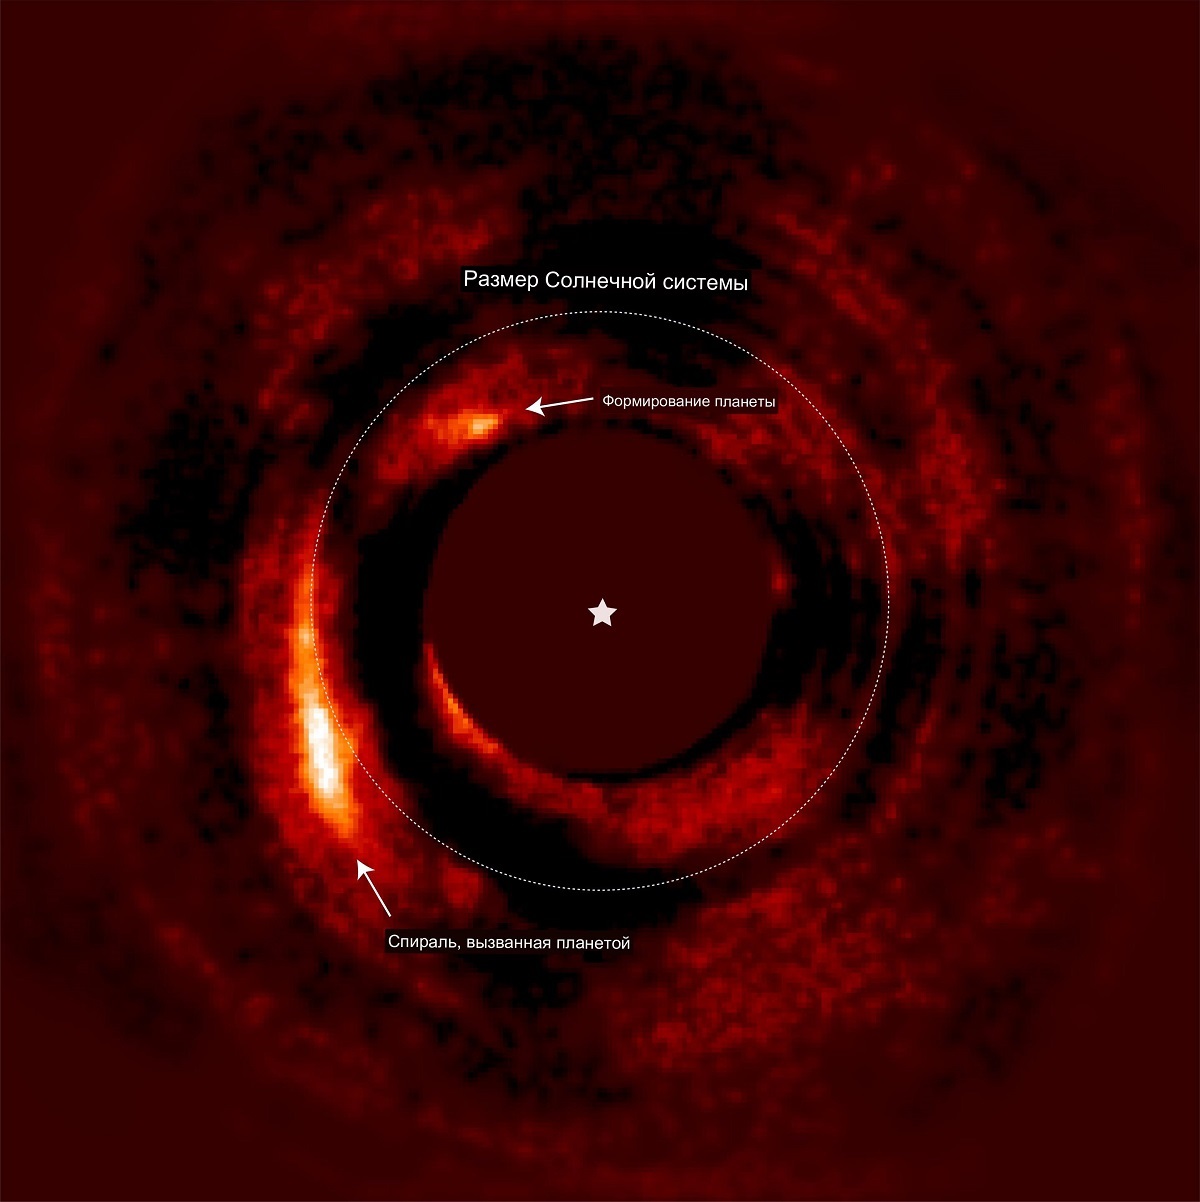 Астрономы подтвердили существование протопланеты HD 169142b